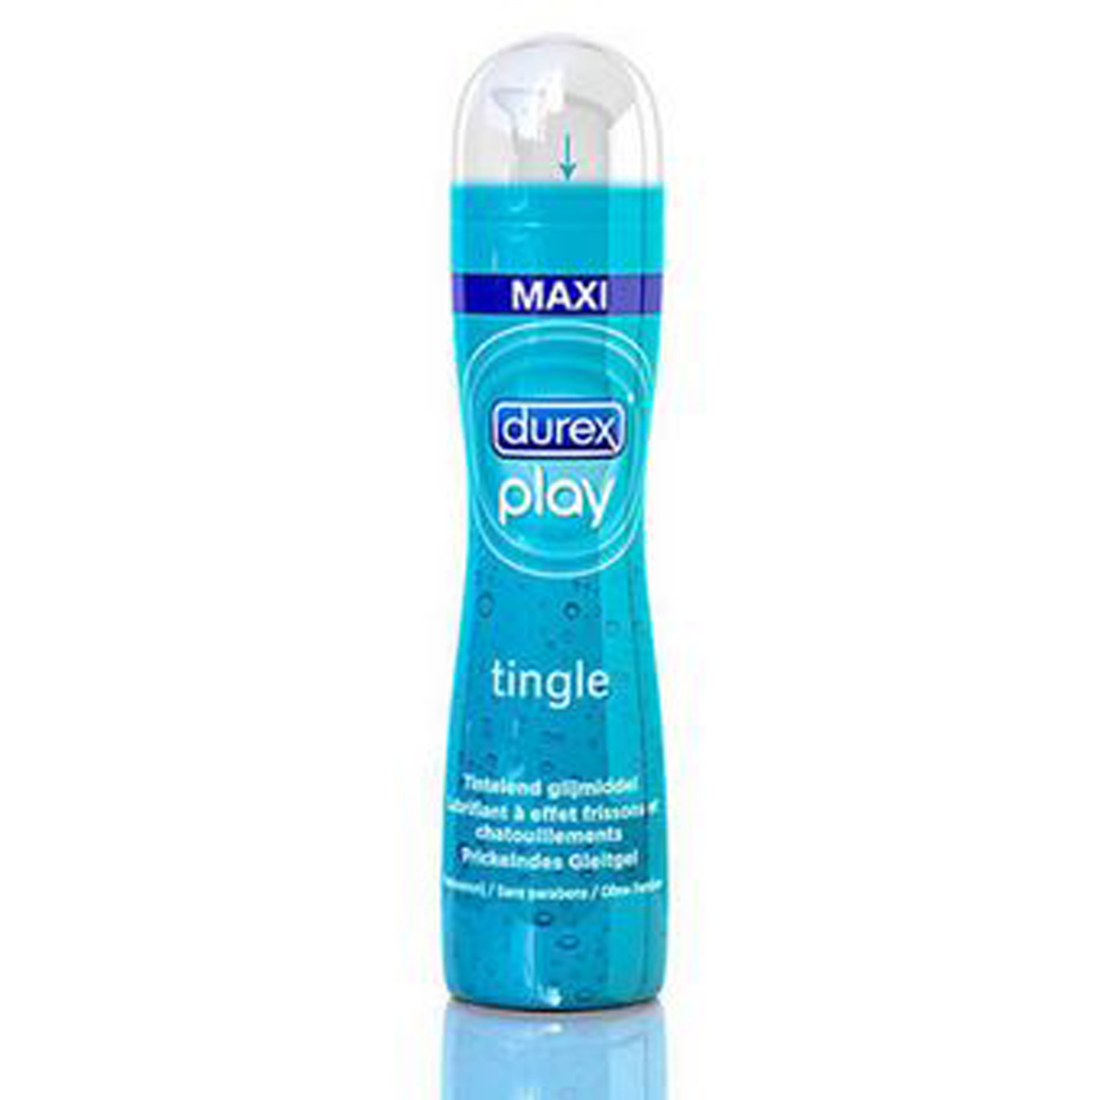 Blauw flesje met Durex Play Tingle Me, Durex Play voor sexuele avonturen! Durex producten koop je bij Flavourez!